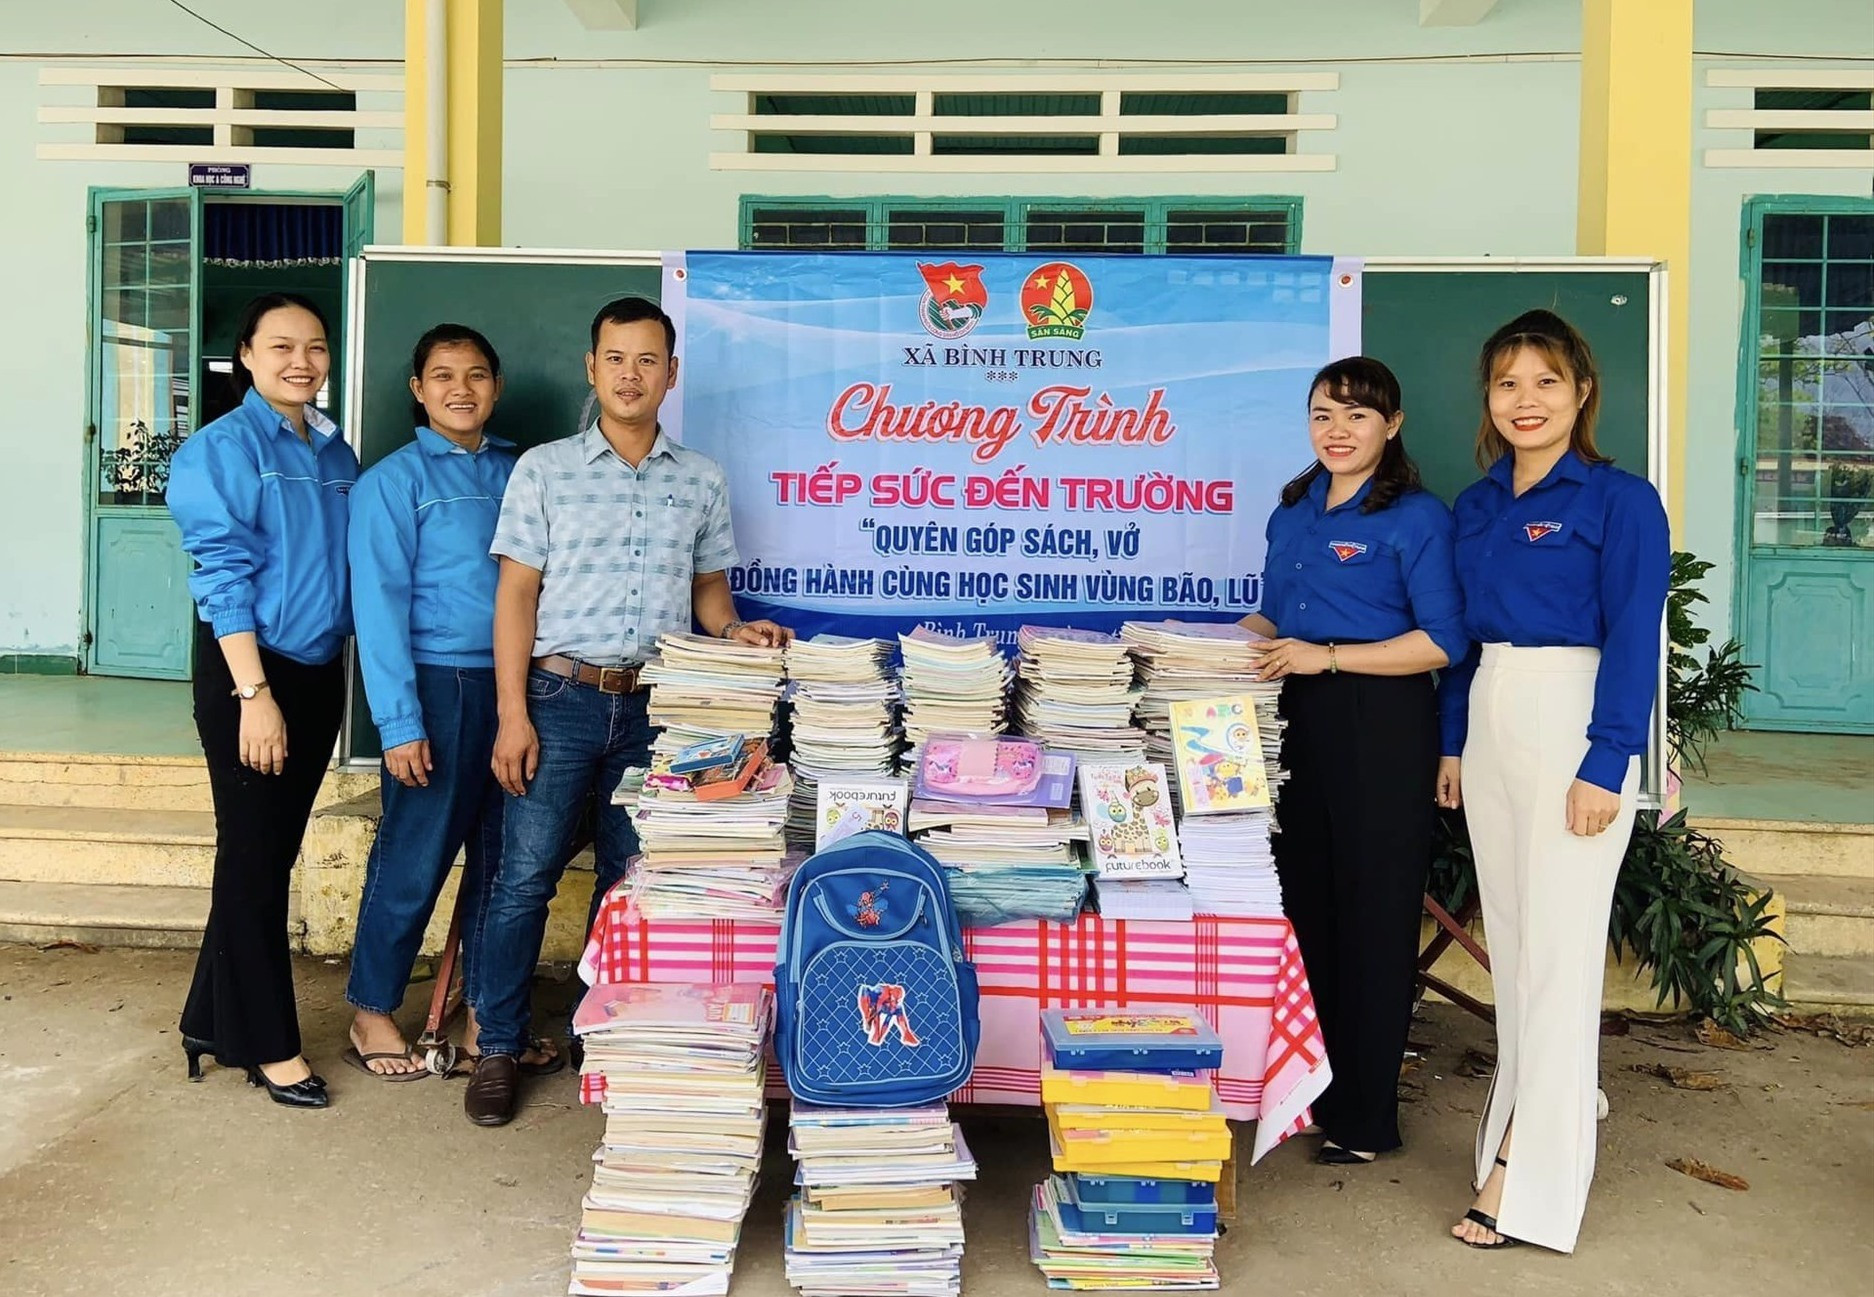 Đoàn xã Bình Trung và Trường Tiểu học Lê Lai tiếp nhận nhiều đầu sách từ chương trình